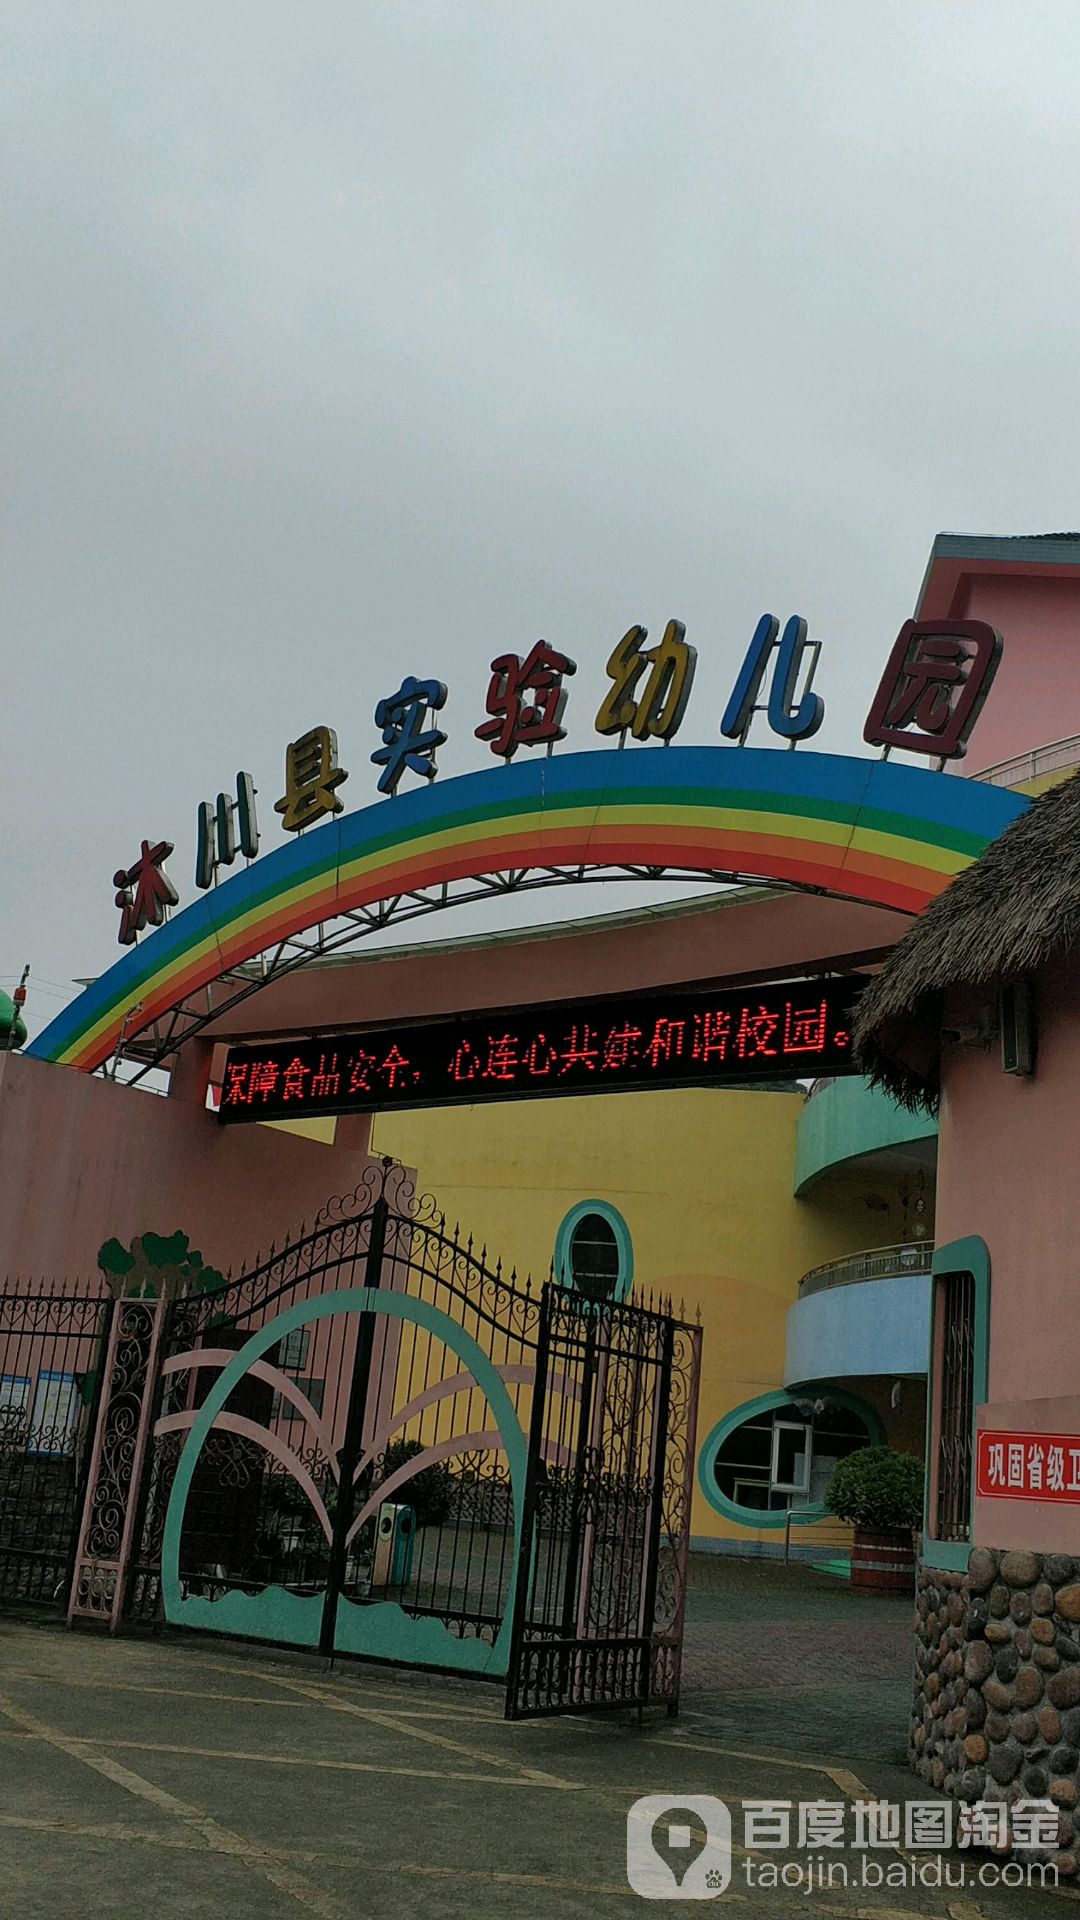 沐川县实验幼儿园